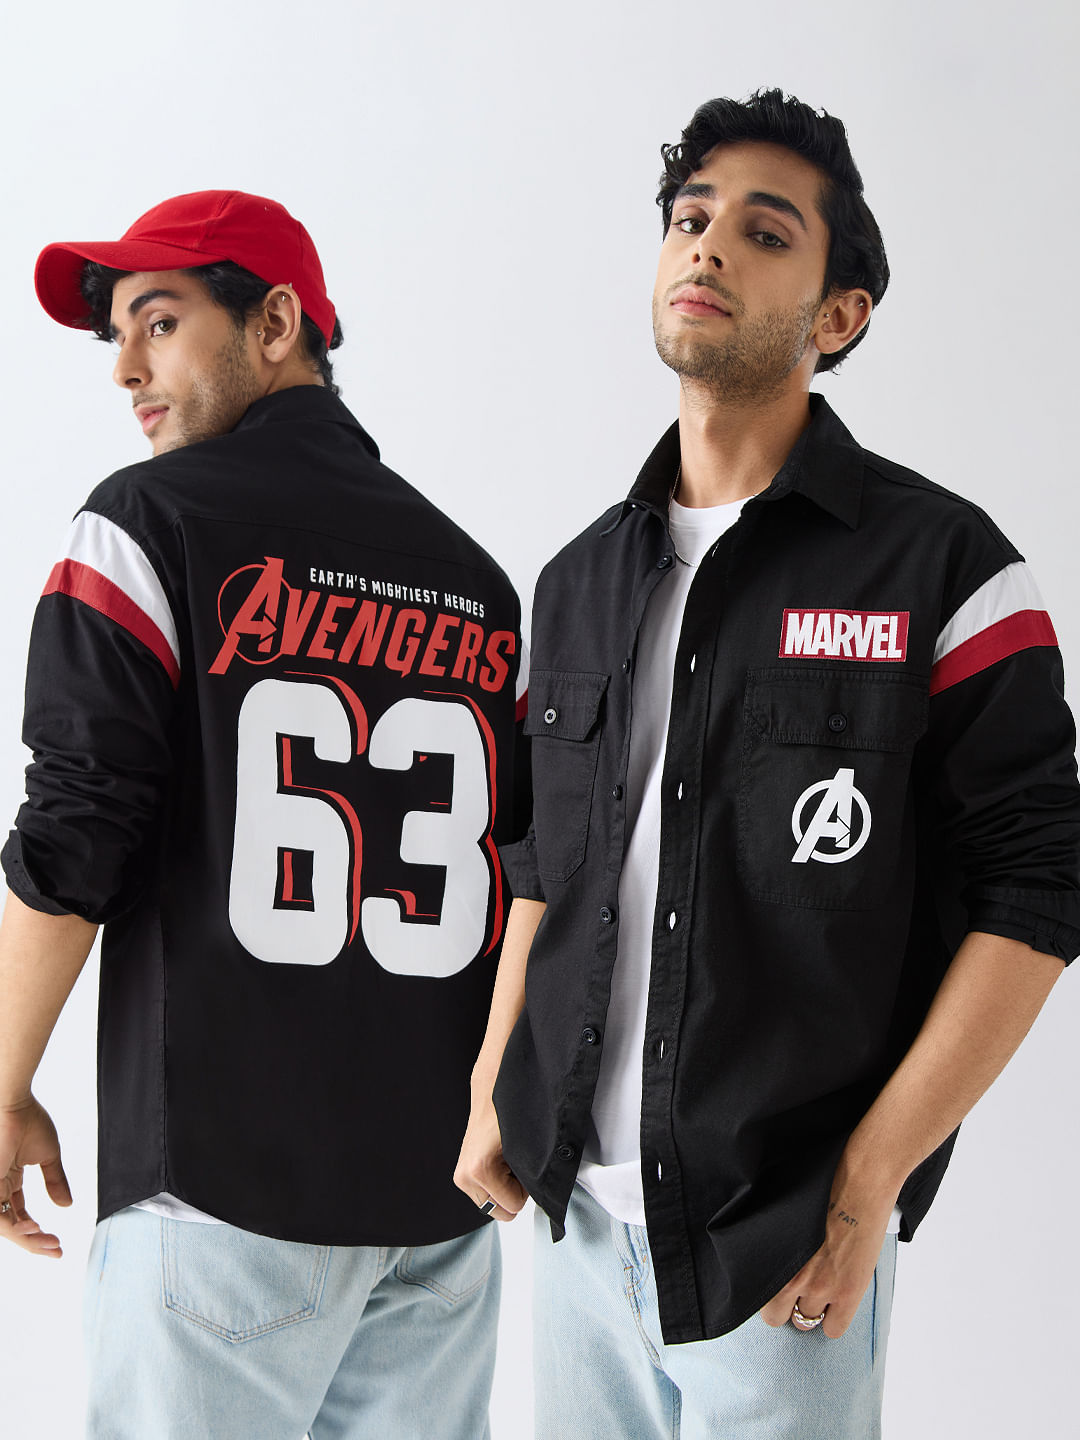 Buy Marvel: Avengers 63 Oversized Shirts Online